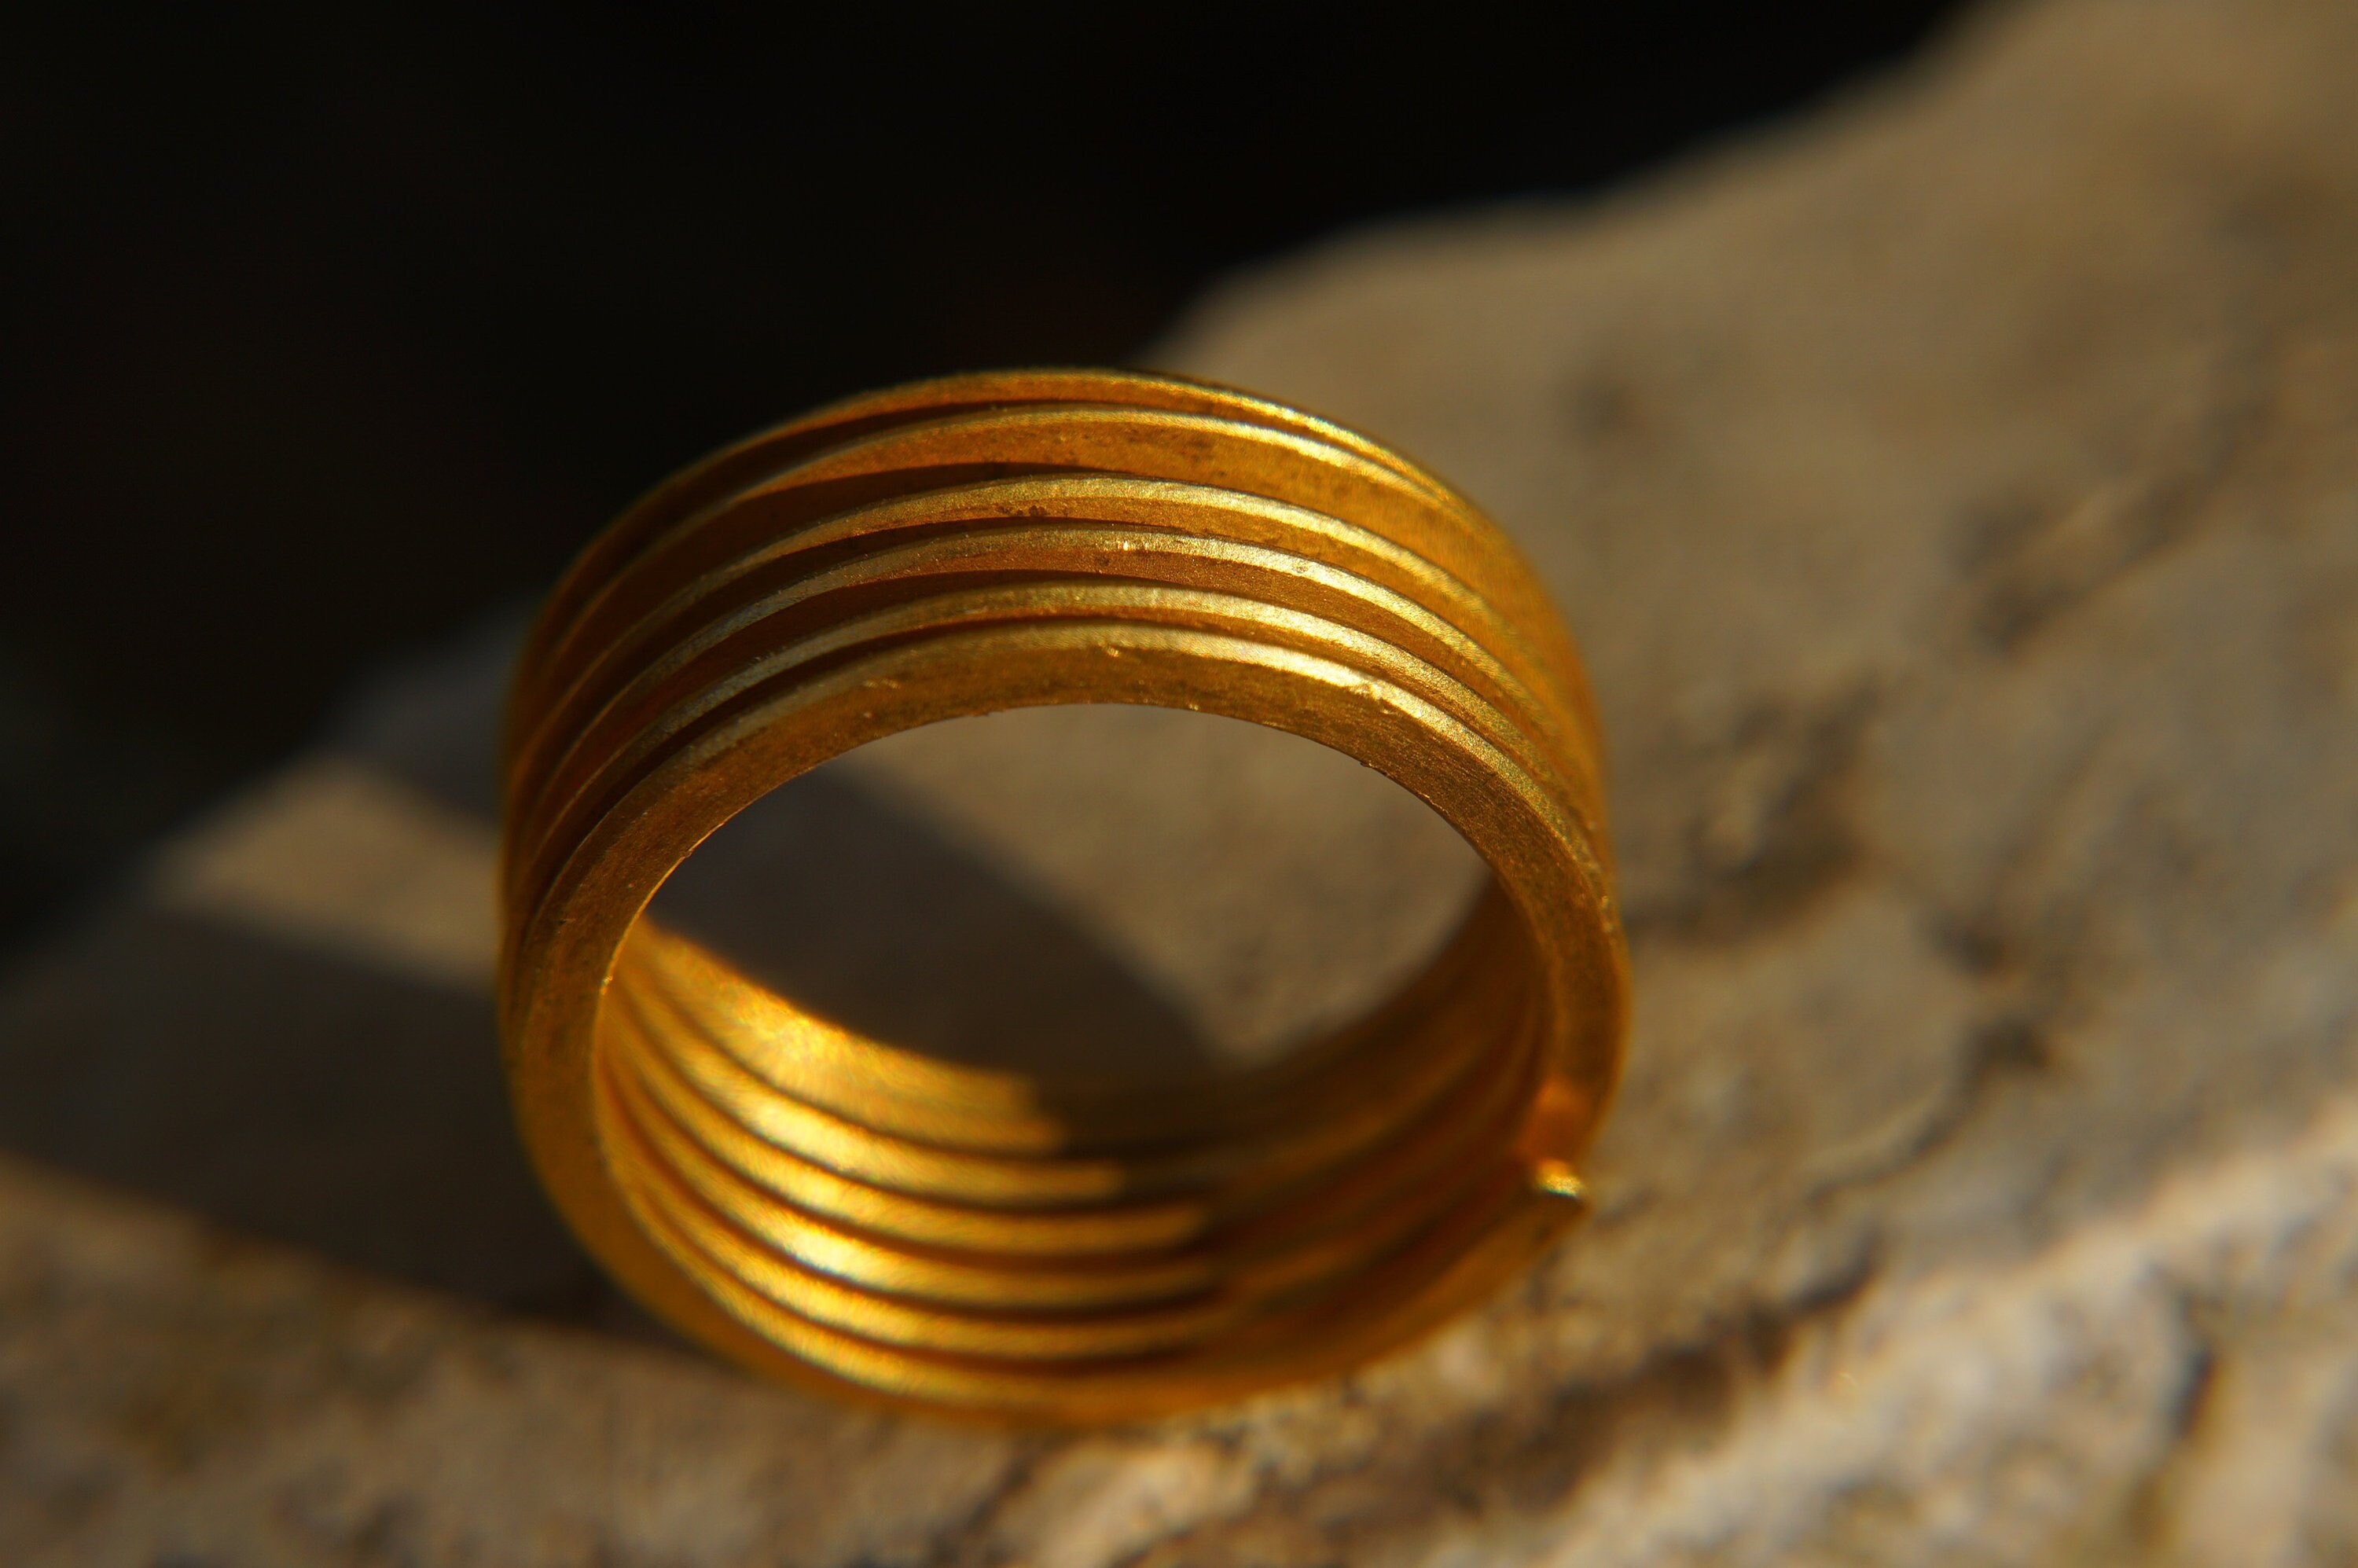 Buy 1 gram gold ring online | Kalyan Jewellers